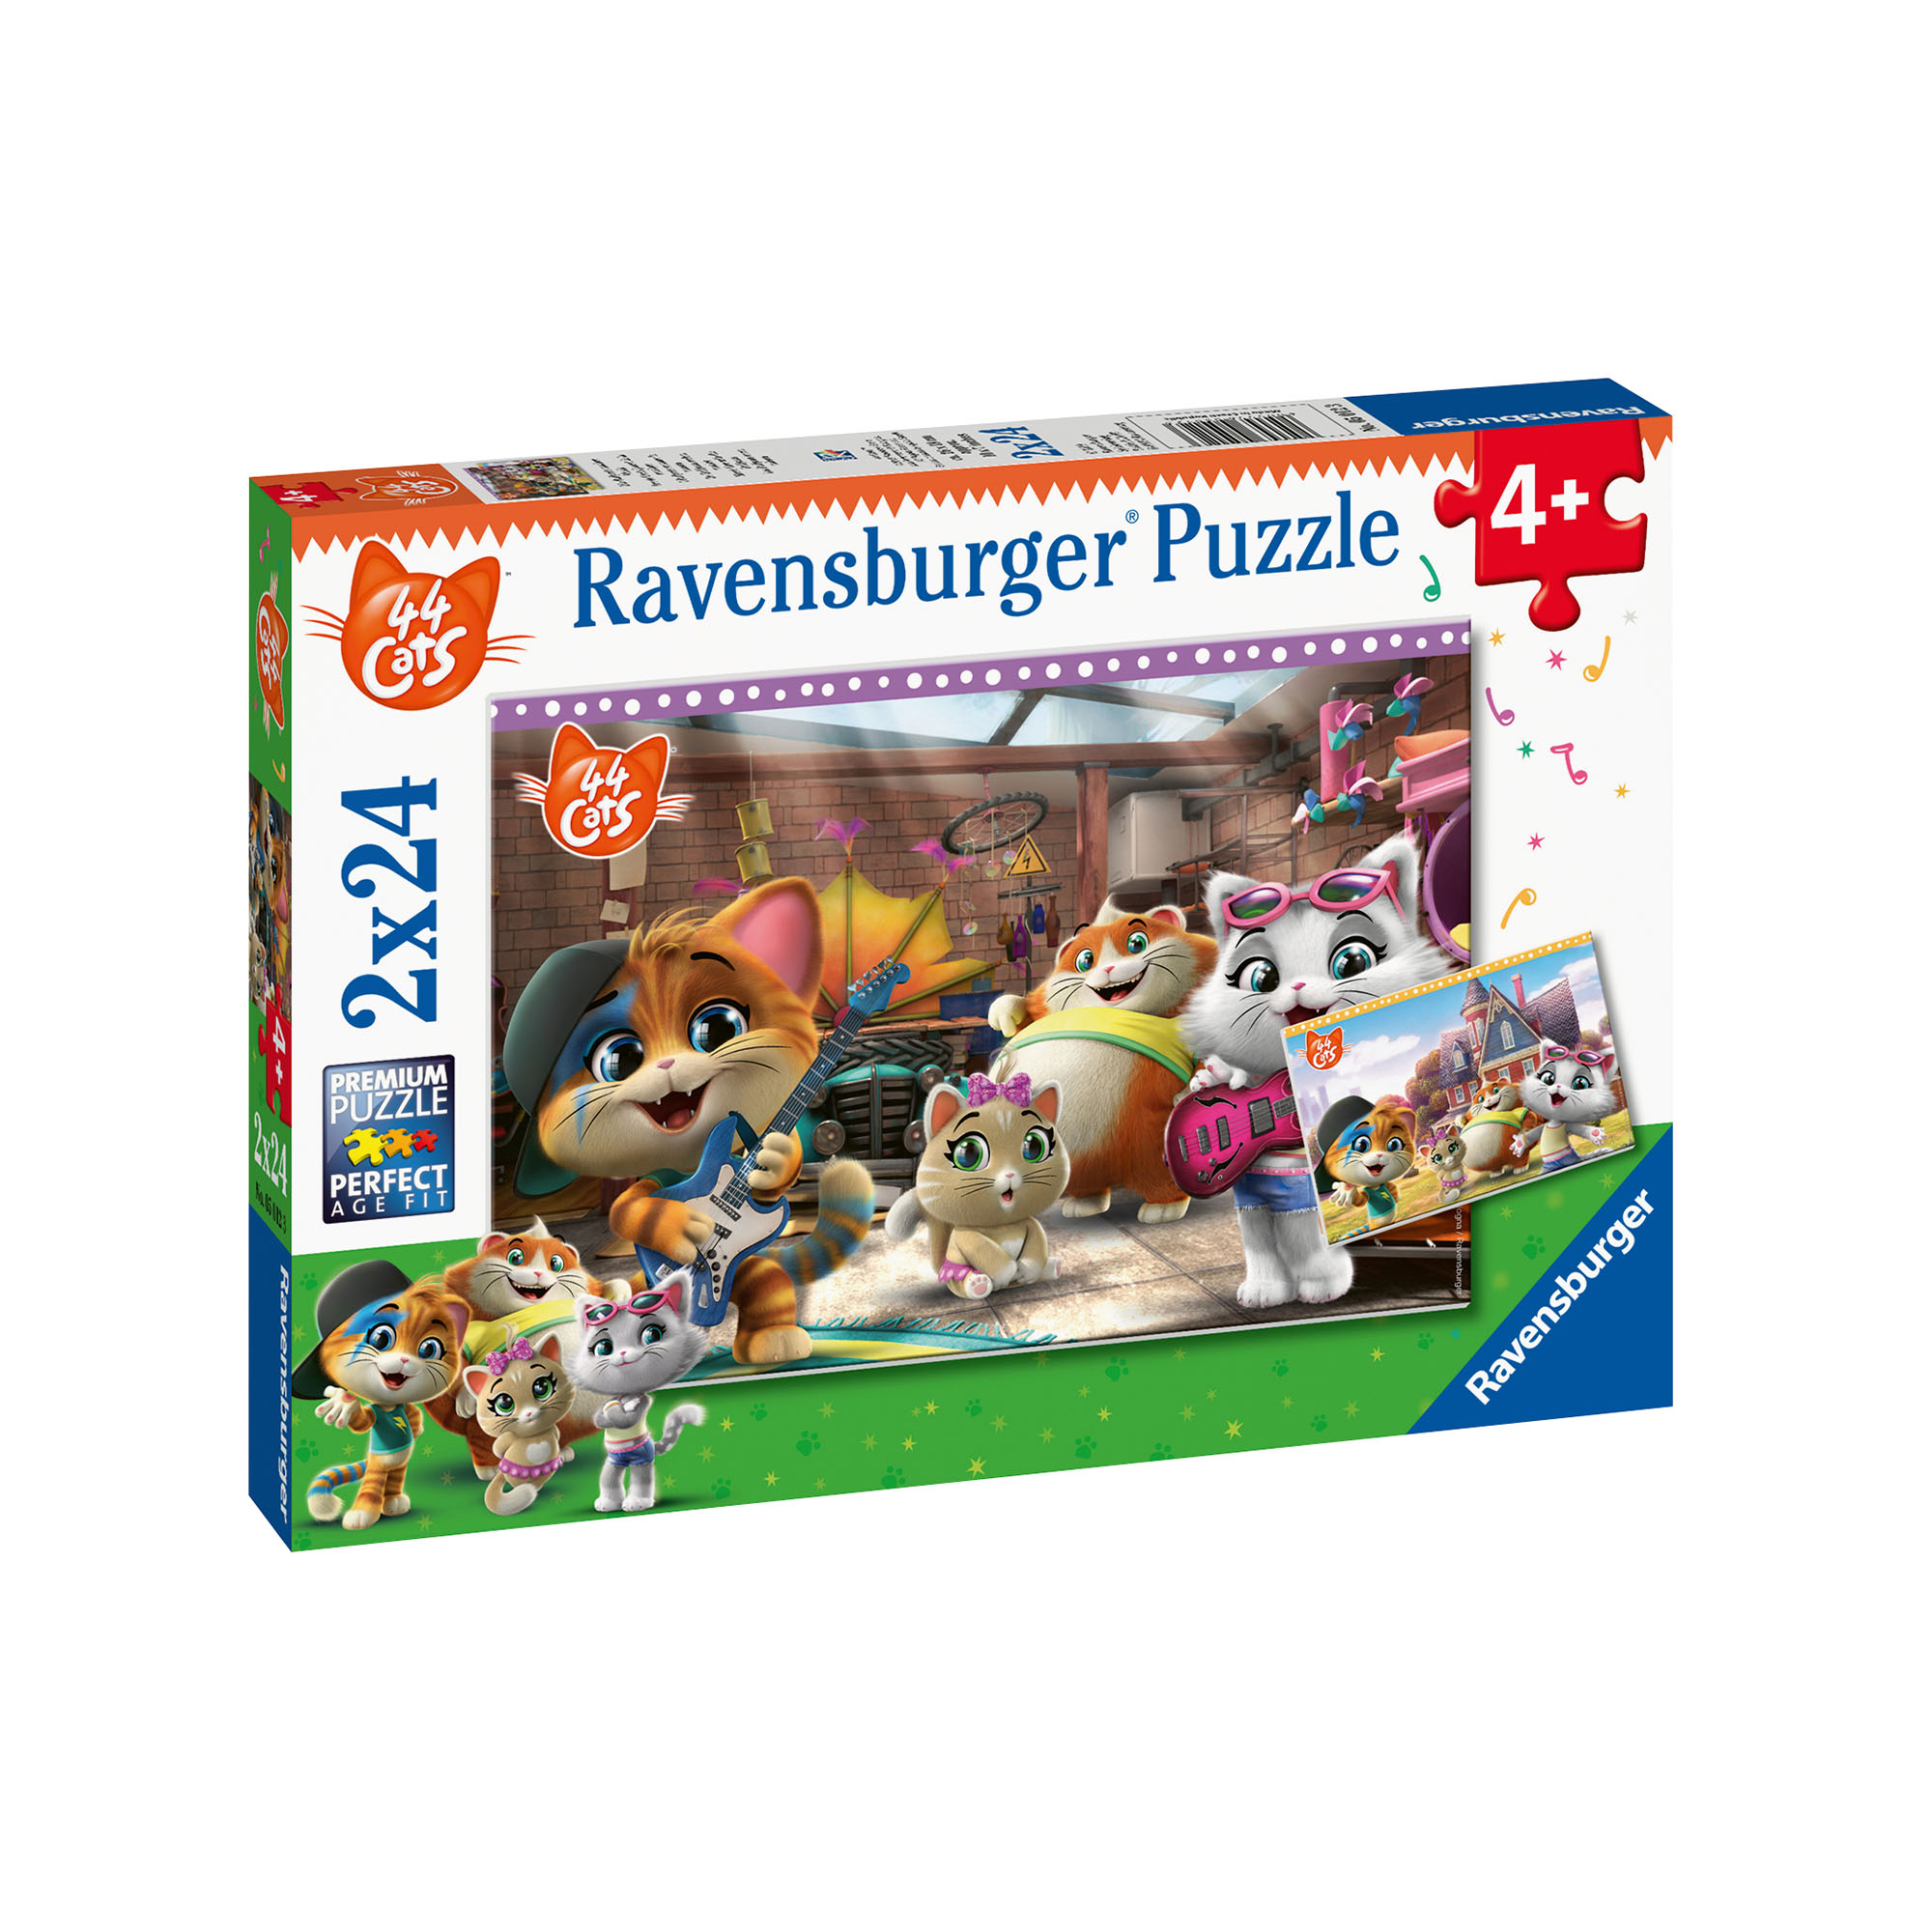 Ravensburger Puzzle 2x24 pezzi 05012 - 44 Gatti, , large